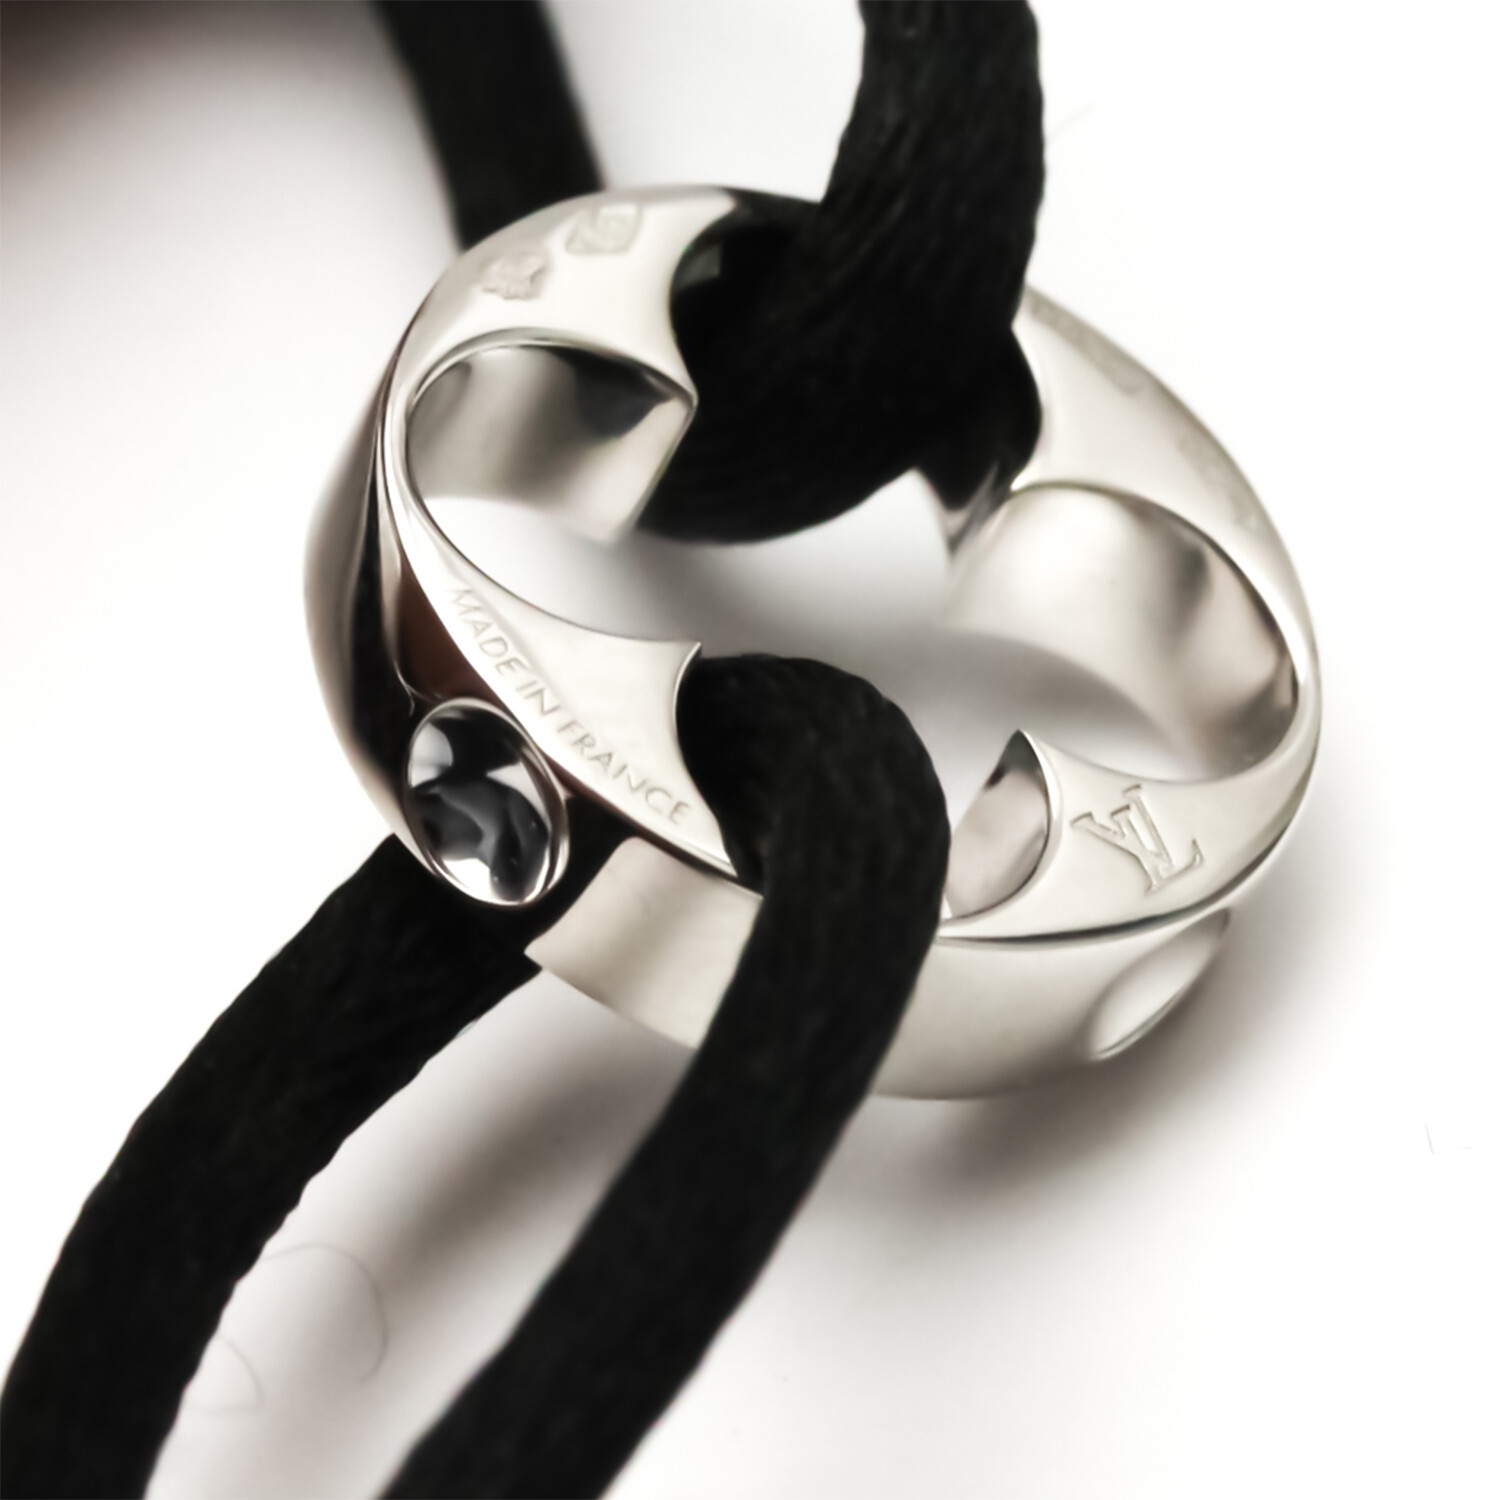 Louis Vuitton // 18k White Gold Empreinte Bracelet // 8.26 // Pre